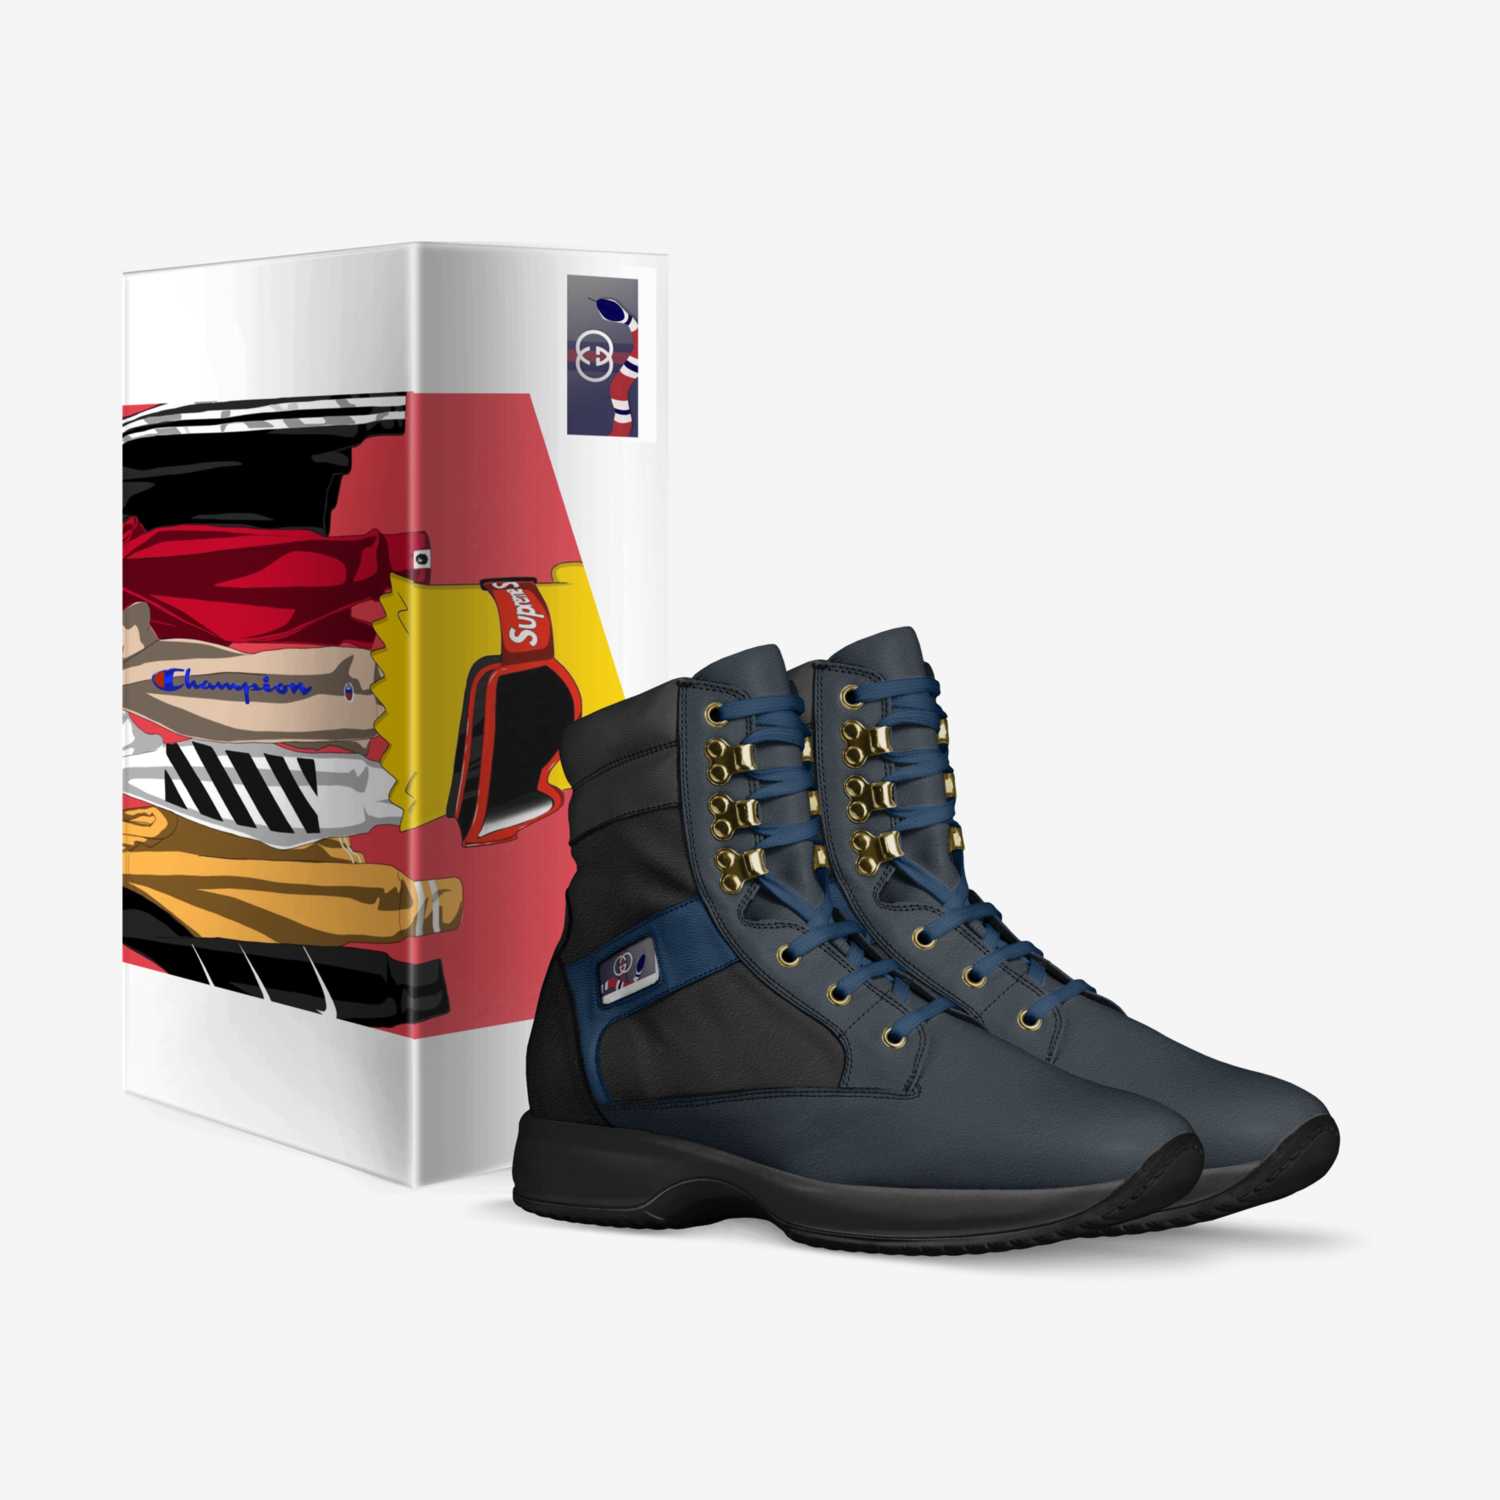 JHLX2 custom made in Italy shoes by Joshua Liam Hendricks | Box view